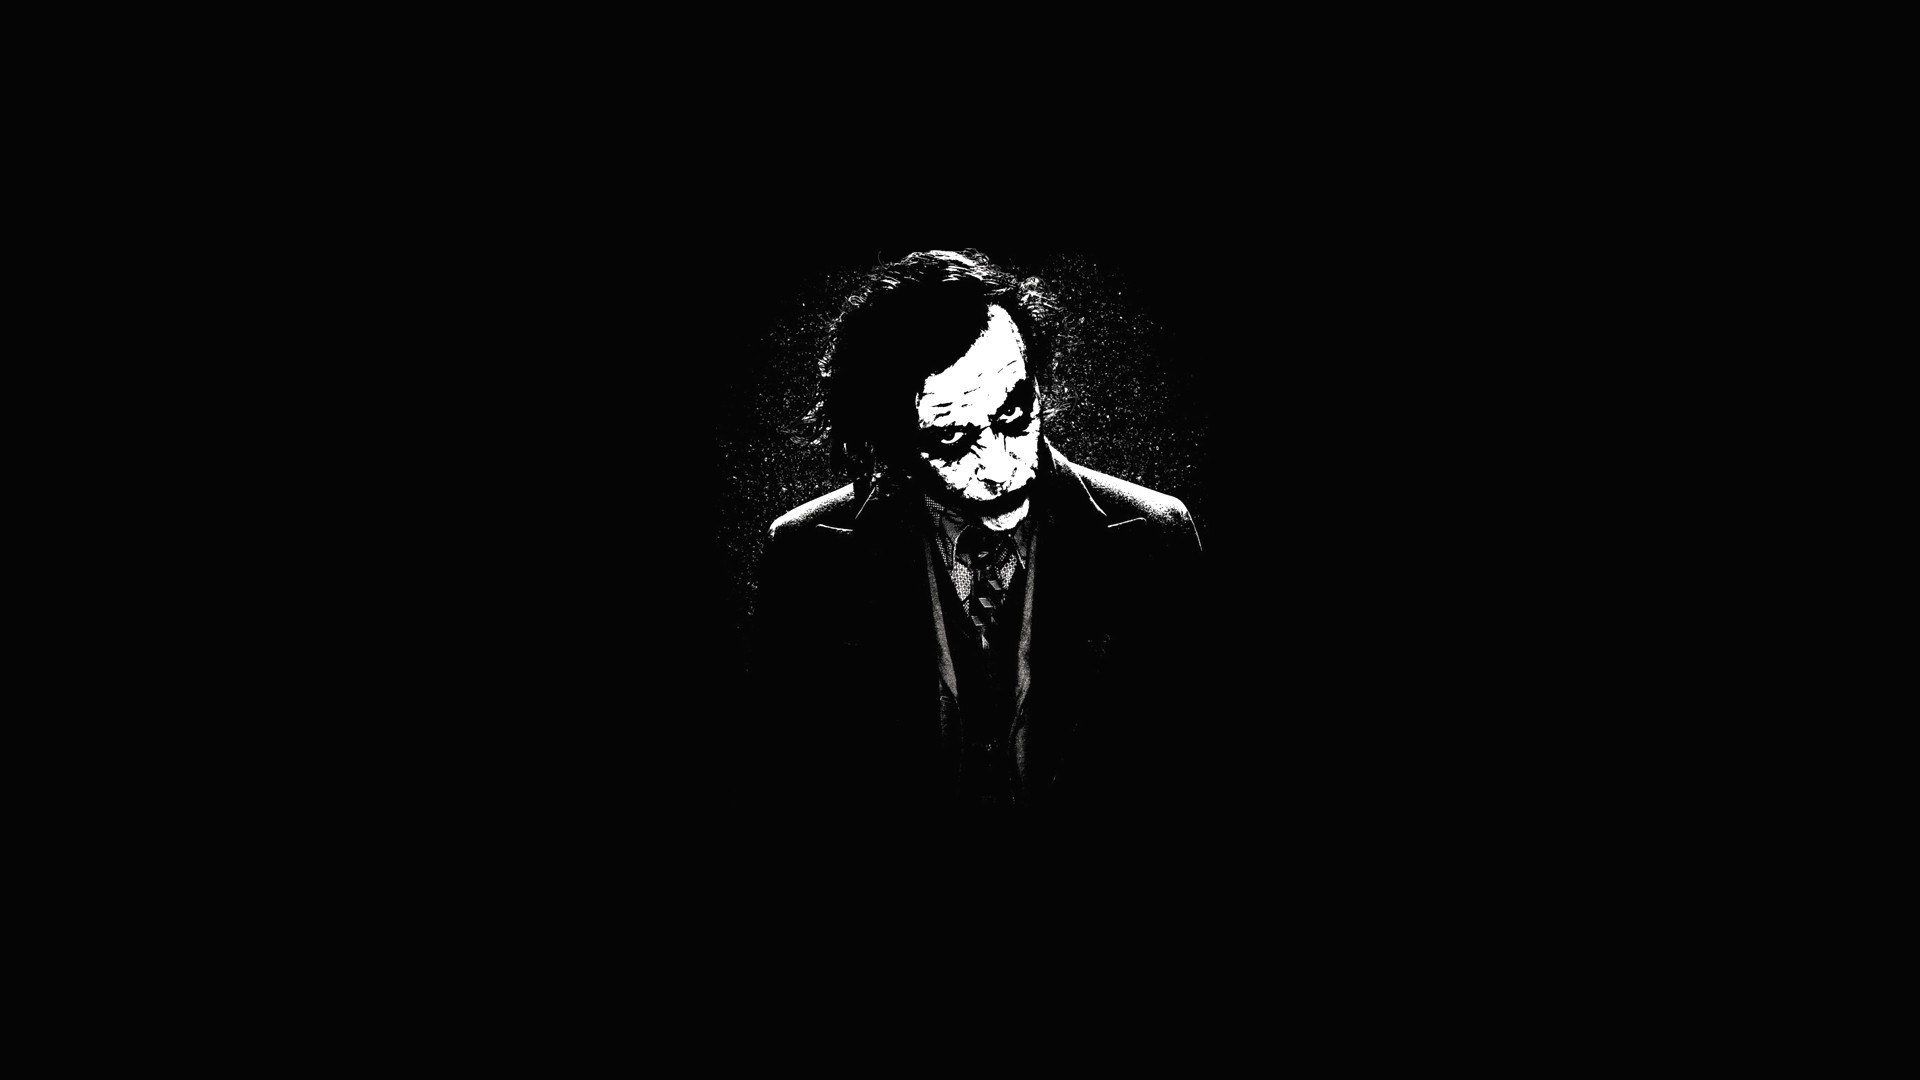 76+] Dark Knight Joker Wallpaper - WallpaperSafari